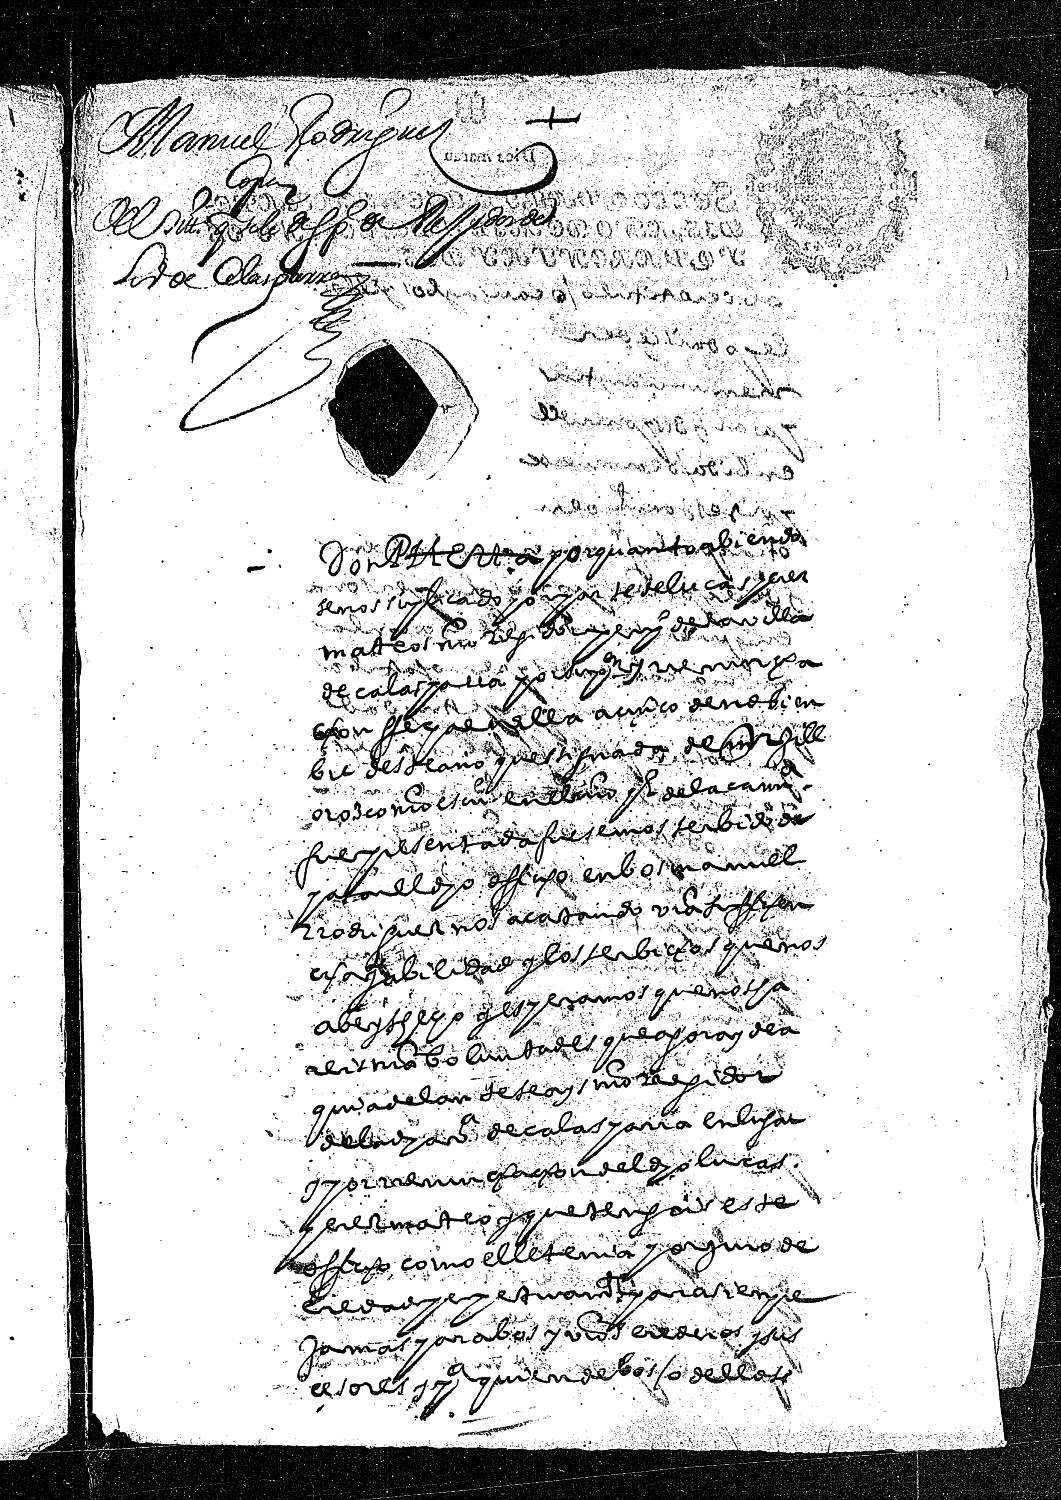 Carta real concediendo el título de regidor perpetuo de Calasparra a Manuel Rodríguez.